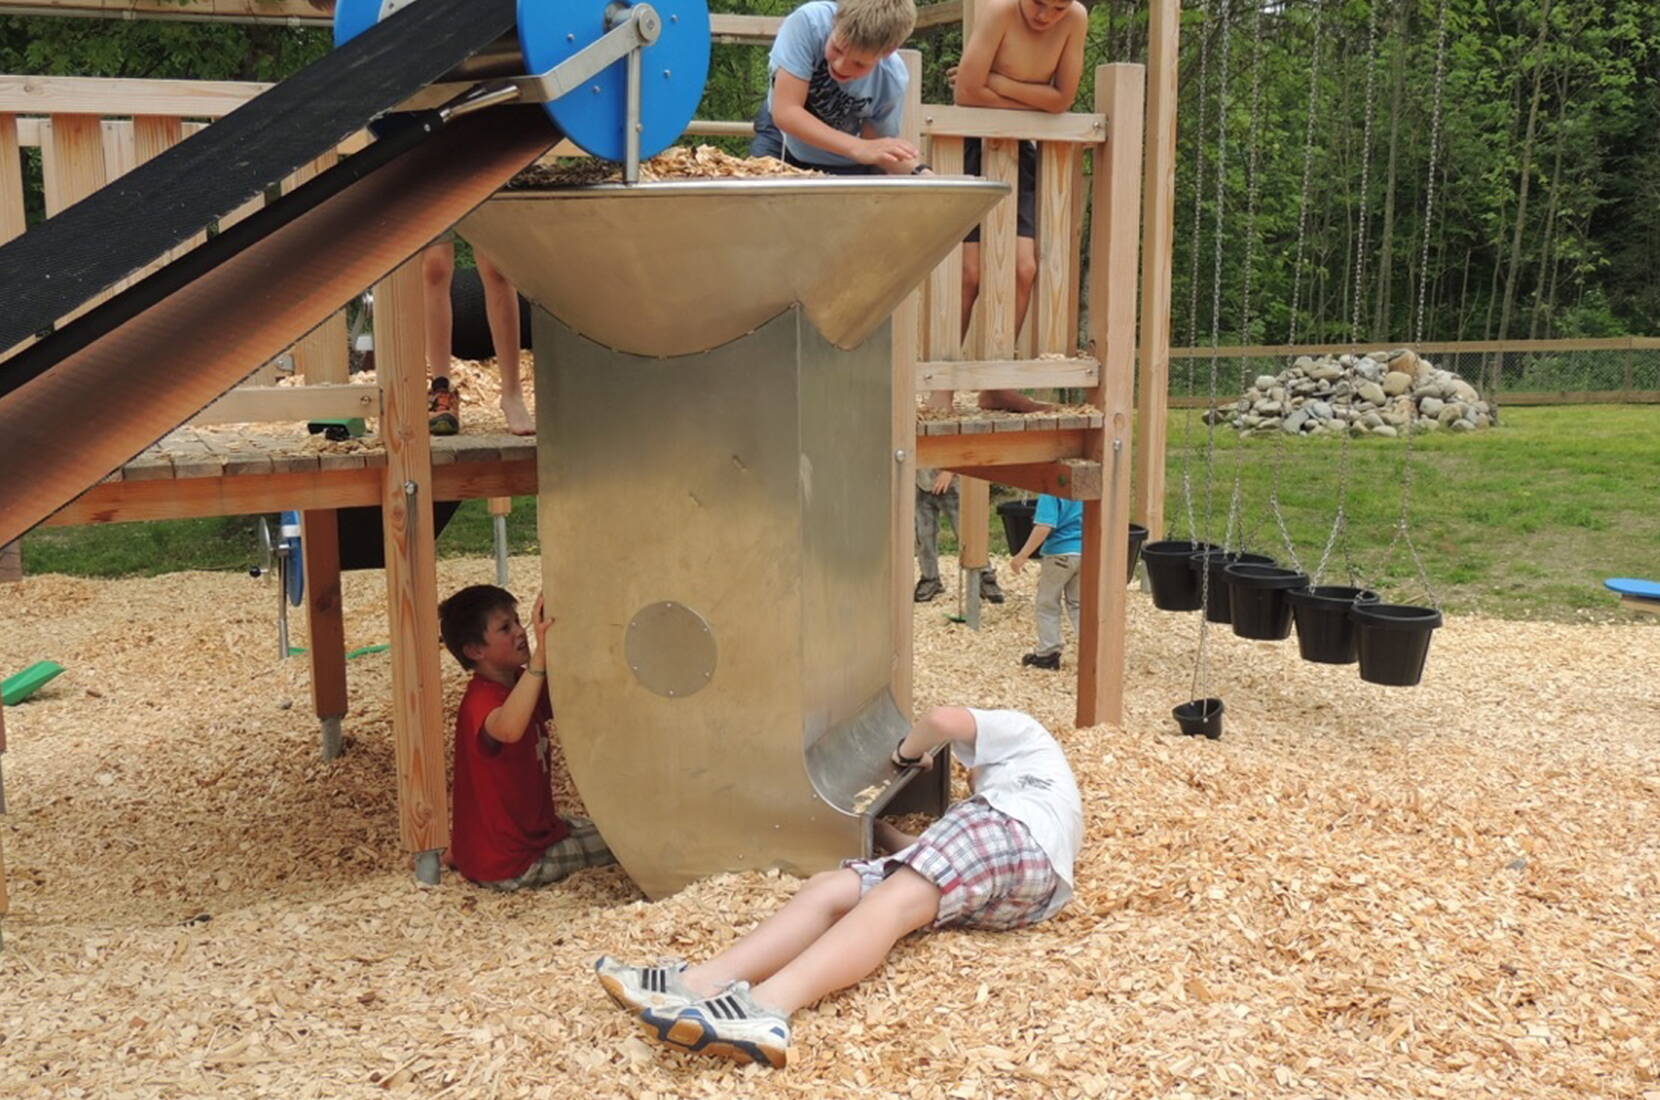 Familienausflug Energiespielplatz Entlebuch. Auf dem neuen Energiespielplatz können sich Kinder spielerisch dem Thema erneuerbare Energien widmen. Gleichzeitig können sie ihre eigenen Energiereserven einsetzen und sich an den zahlreichen Spielgeräten so richtig ausleben.